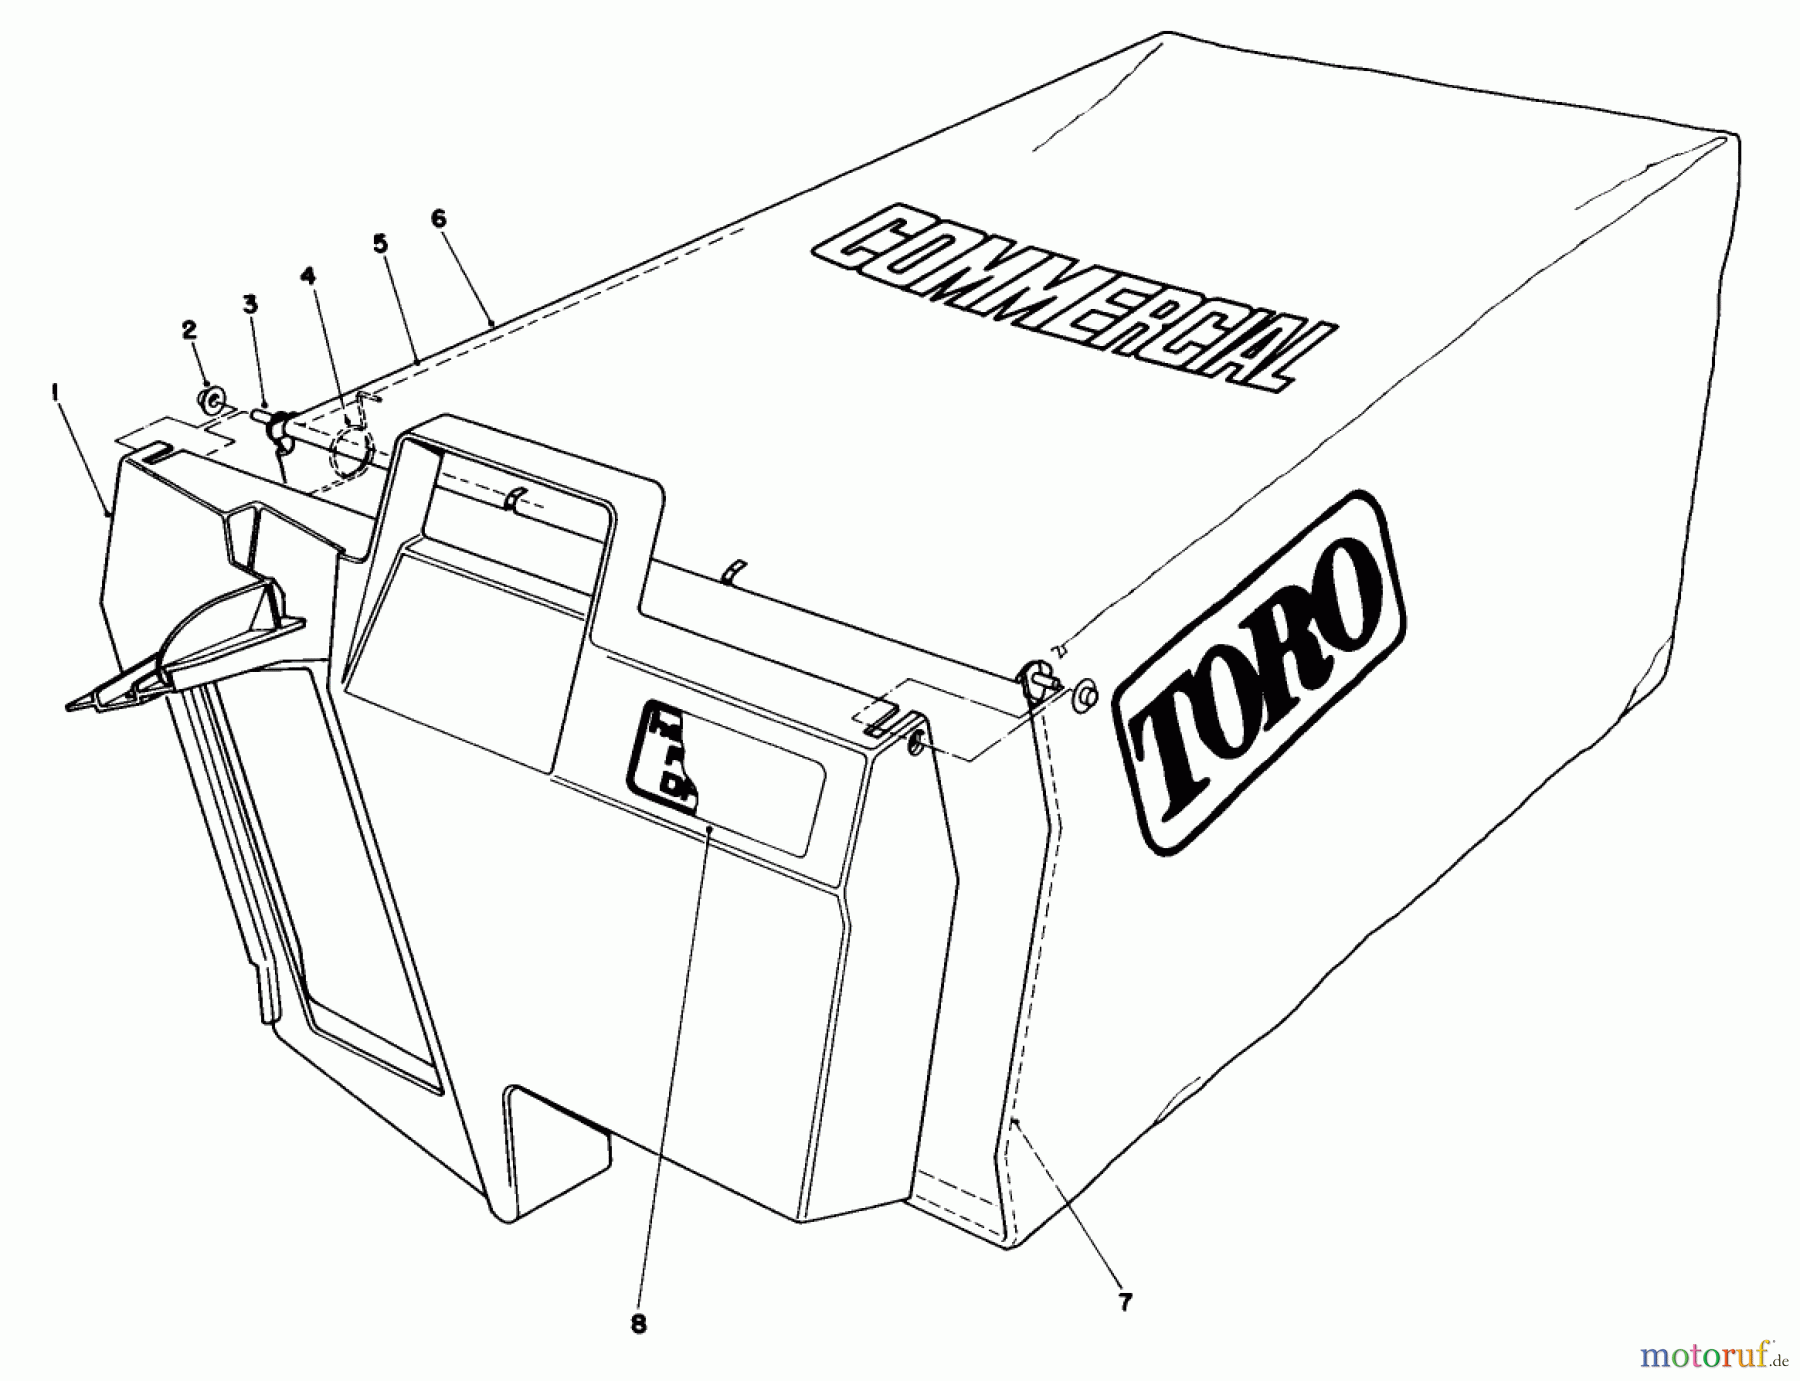  Toro Neu Mowers, Walk-Behind Seite 2 22020 - Toro Lawnmower, 1985 (5000001-5999999) GRASS BAG ASSEMBLY NO. 11-5609